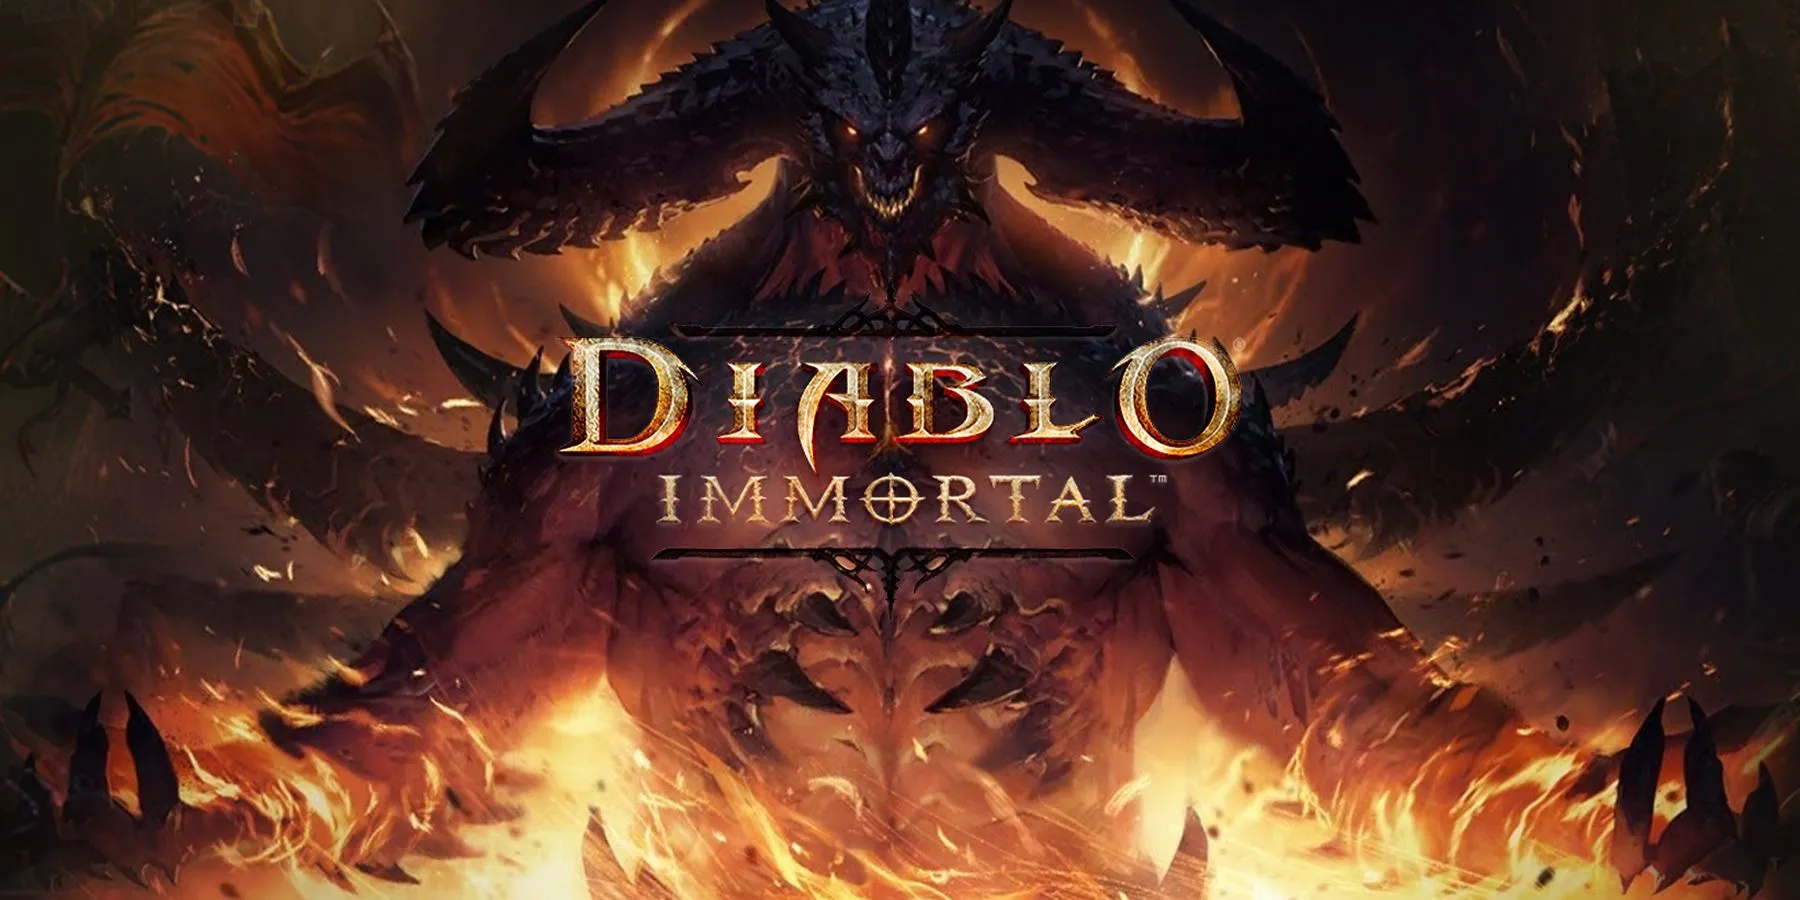 Requisitos de sistema do Diablo Immortal (PC, Android, iOS)